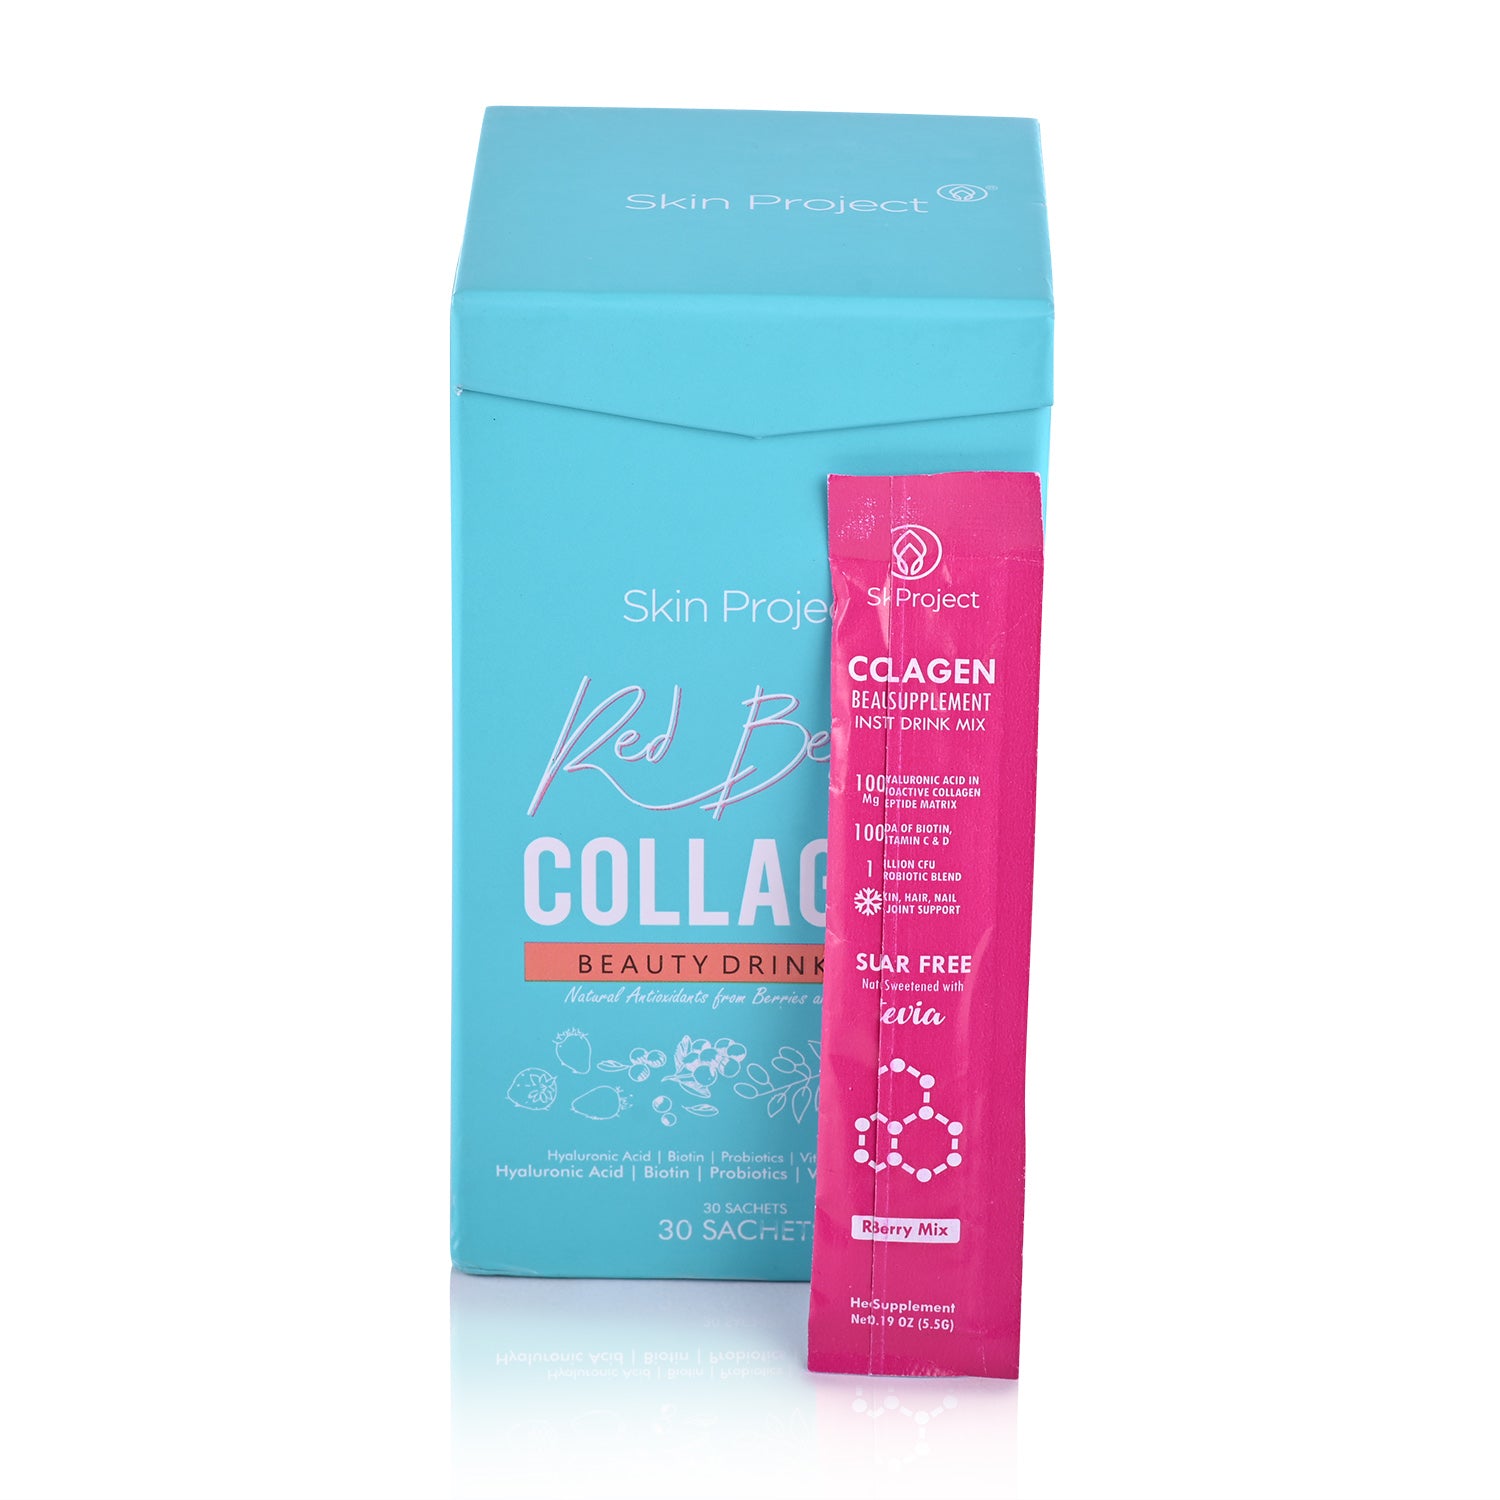 collagen drink